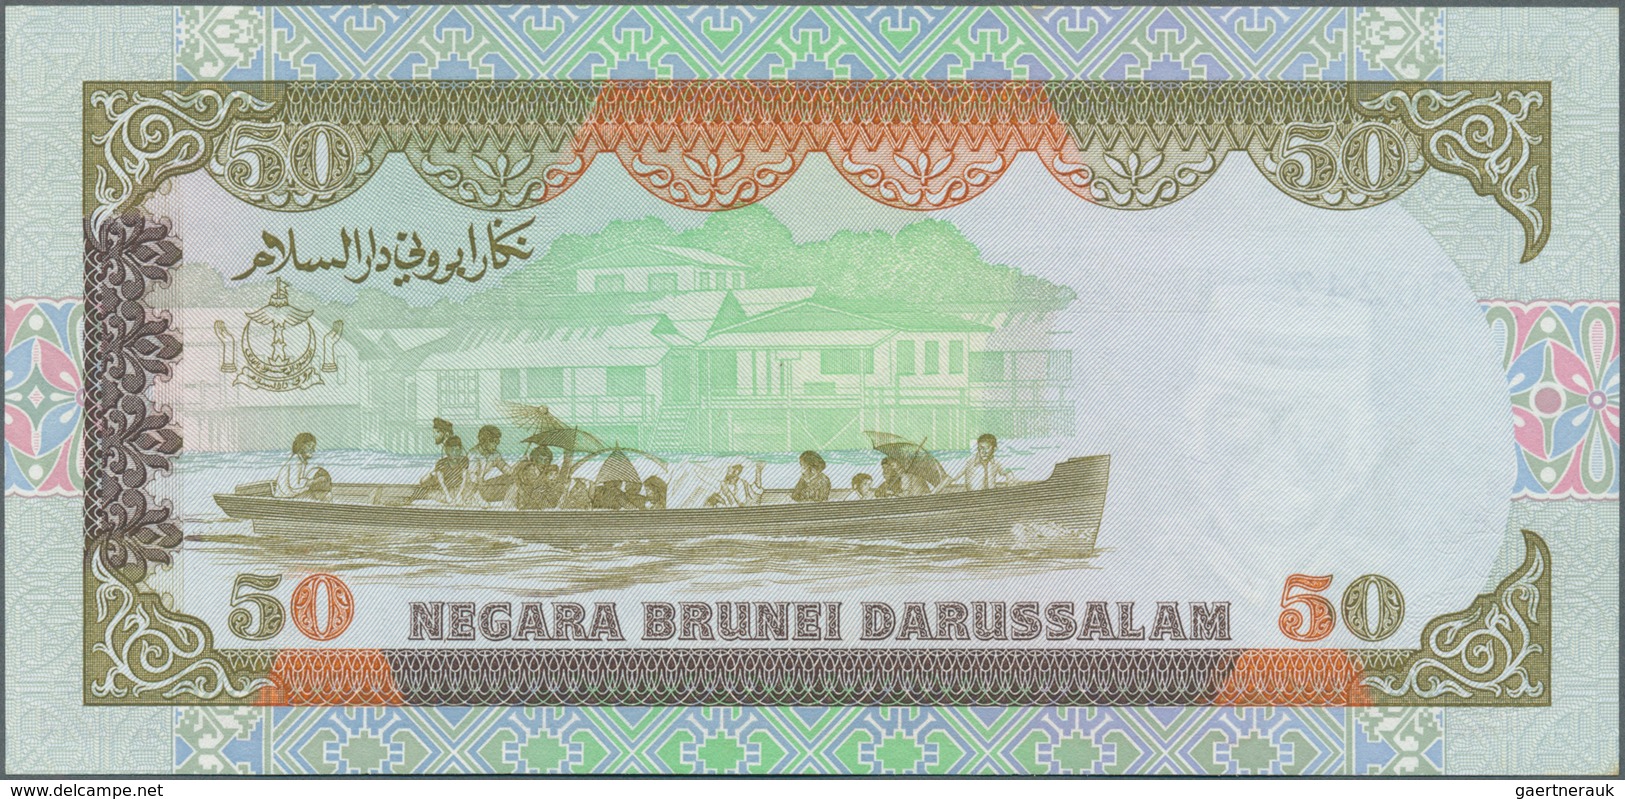 01188 Brunei: 50 Ringgit 1989 P. 16 In Condition: UNC. - Brunei